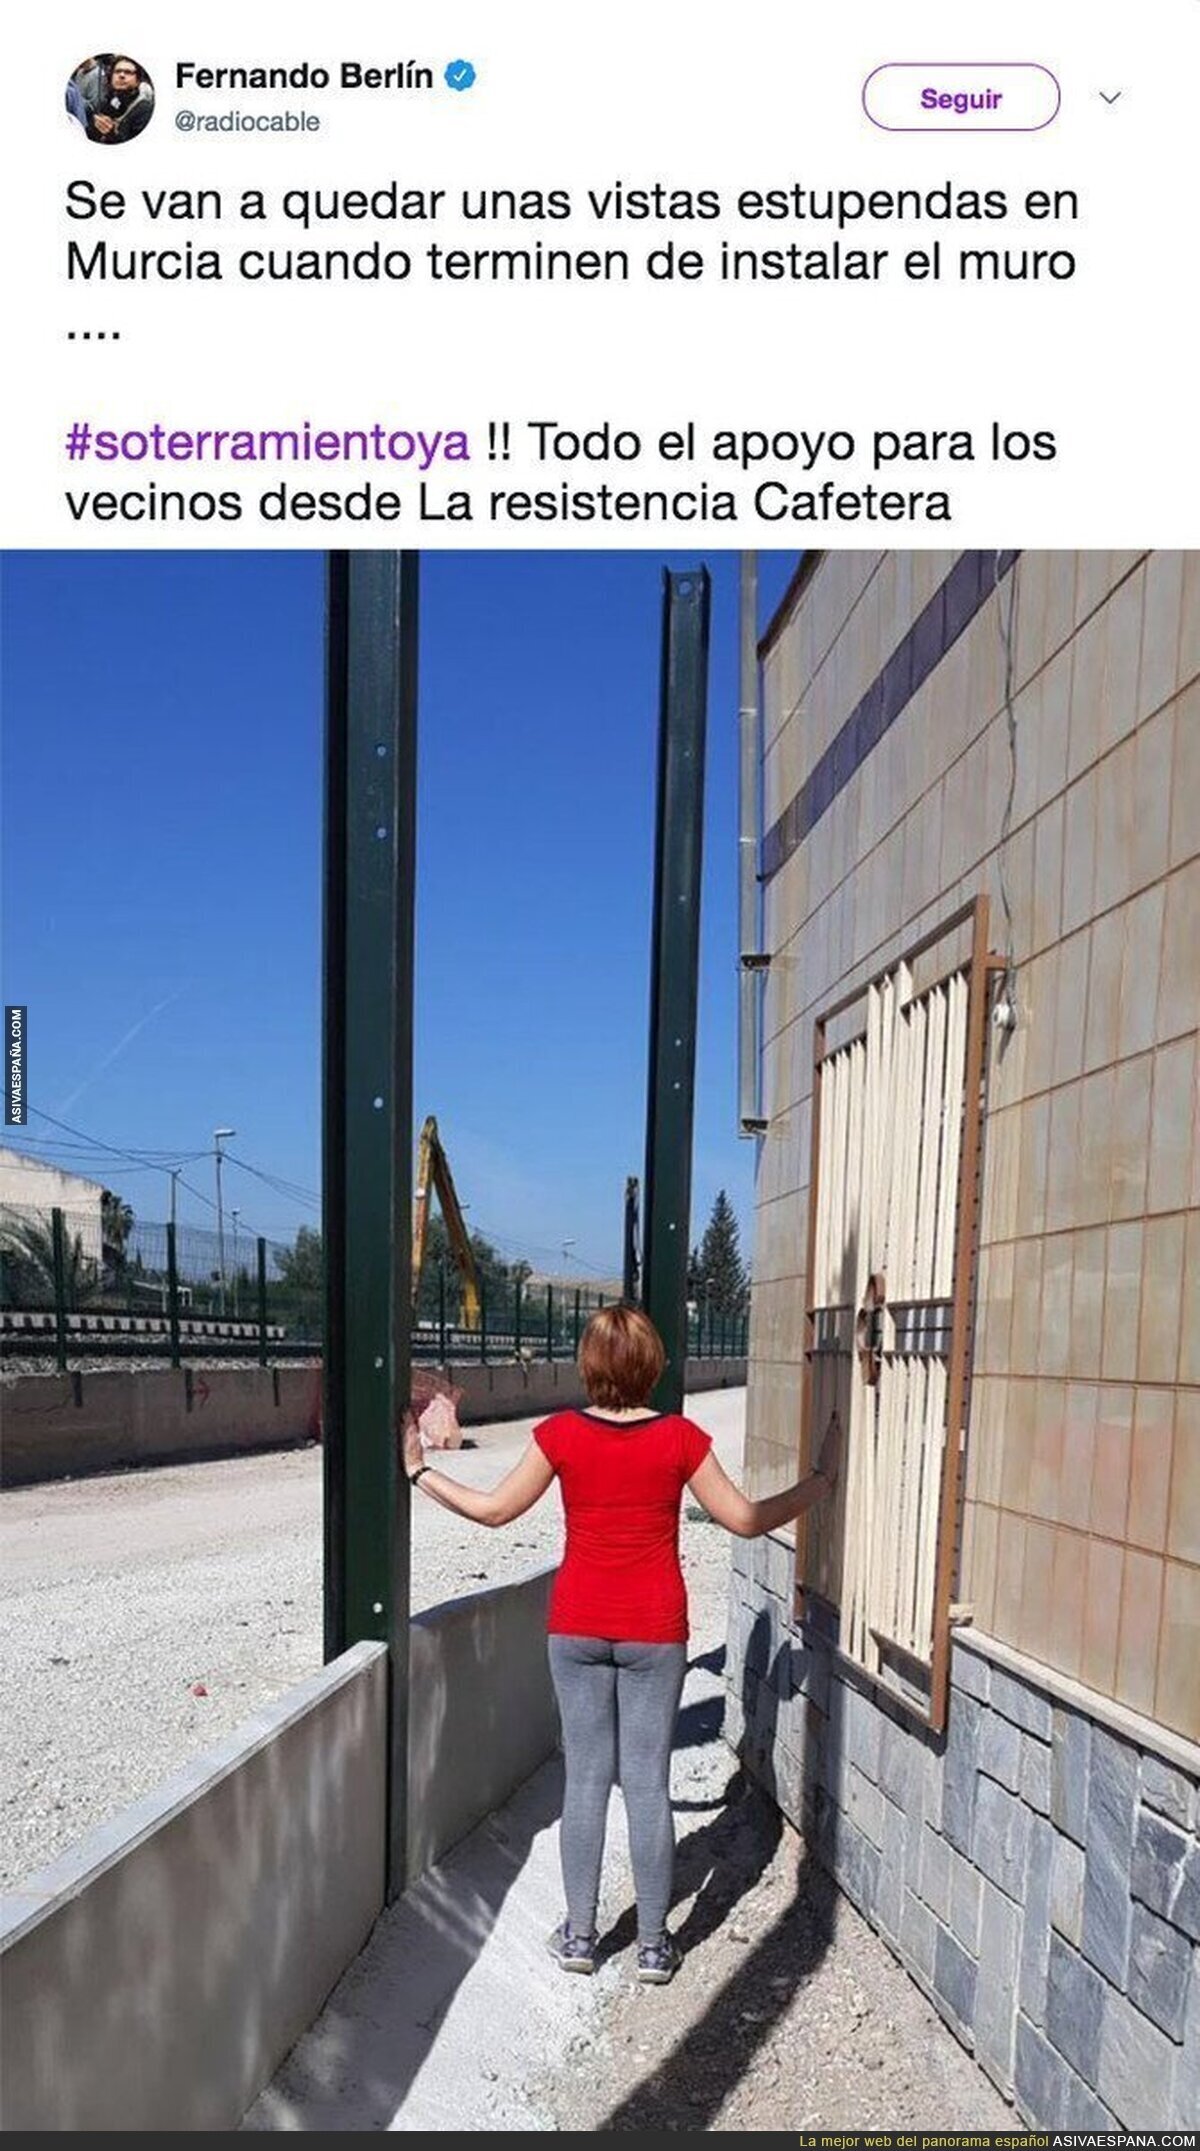 El drama que van a vivir en Murcia con el muro